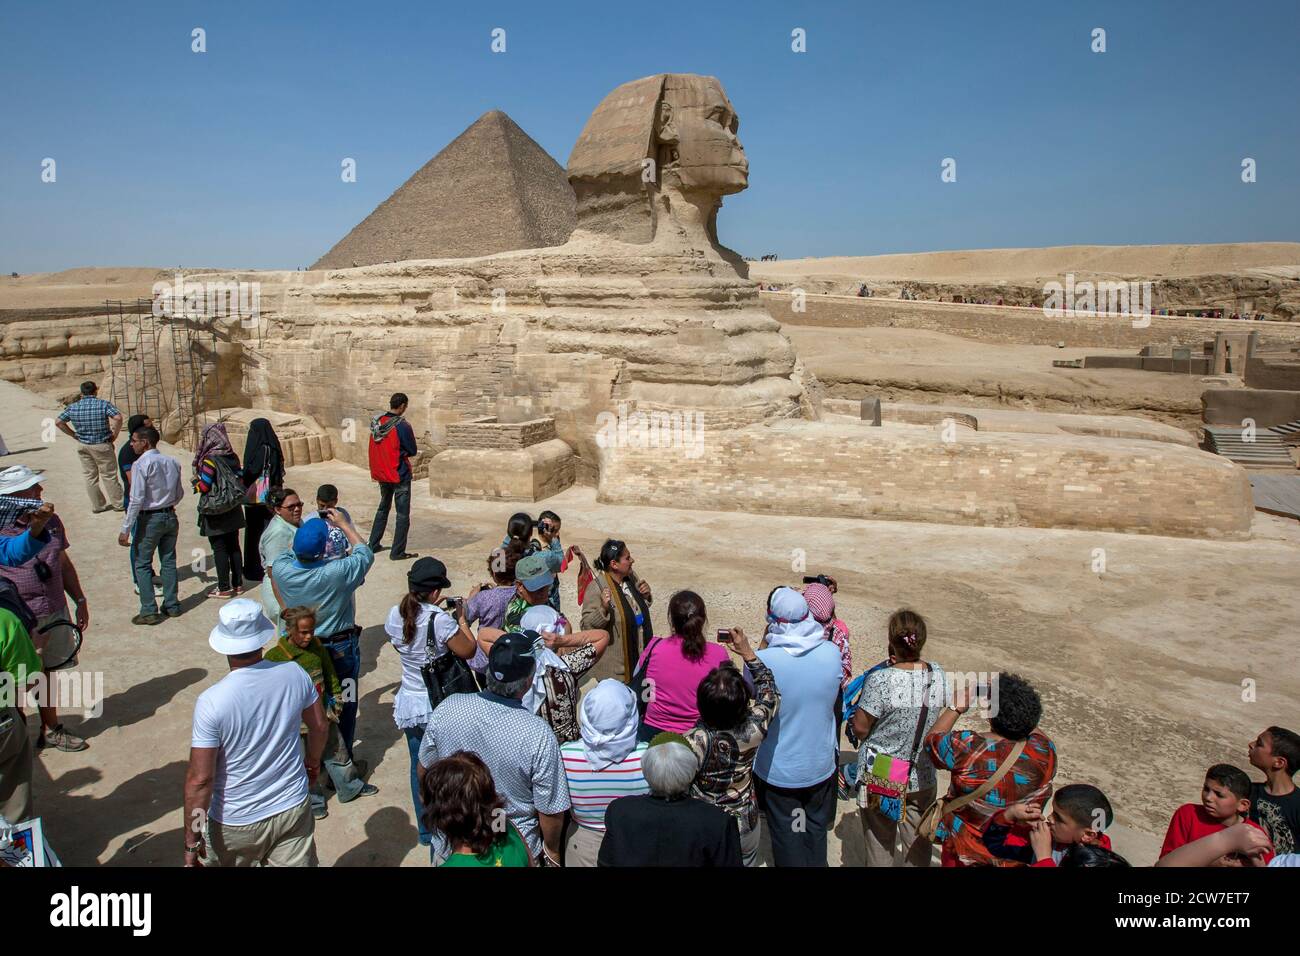 Besucher von Gizeh in Kairo, Ägypten, sehen die Pyramide von Khufu und die Sphinx. Die große Sphinx ist ein großer menschlicher Löwe, der aus Sandstein geschnitzt wurde. Stockfoto